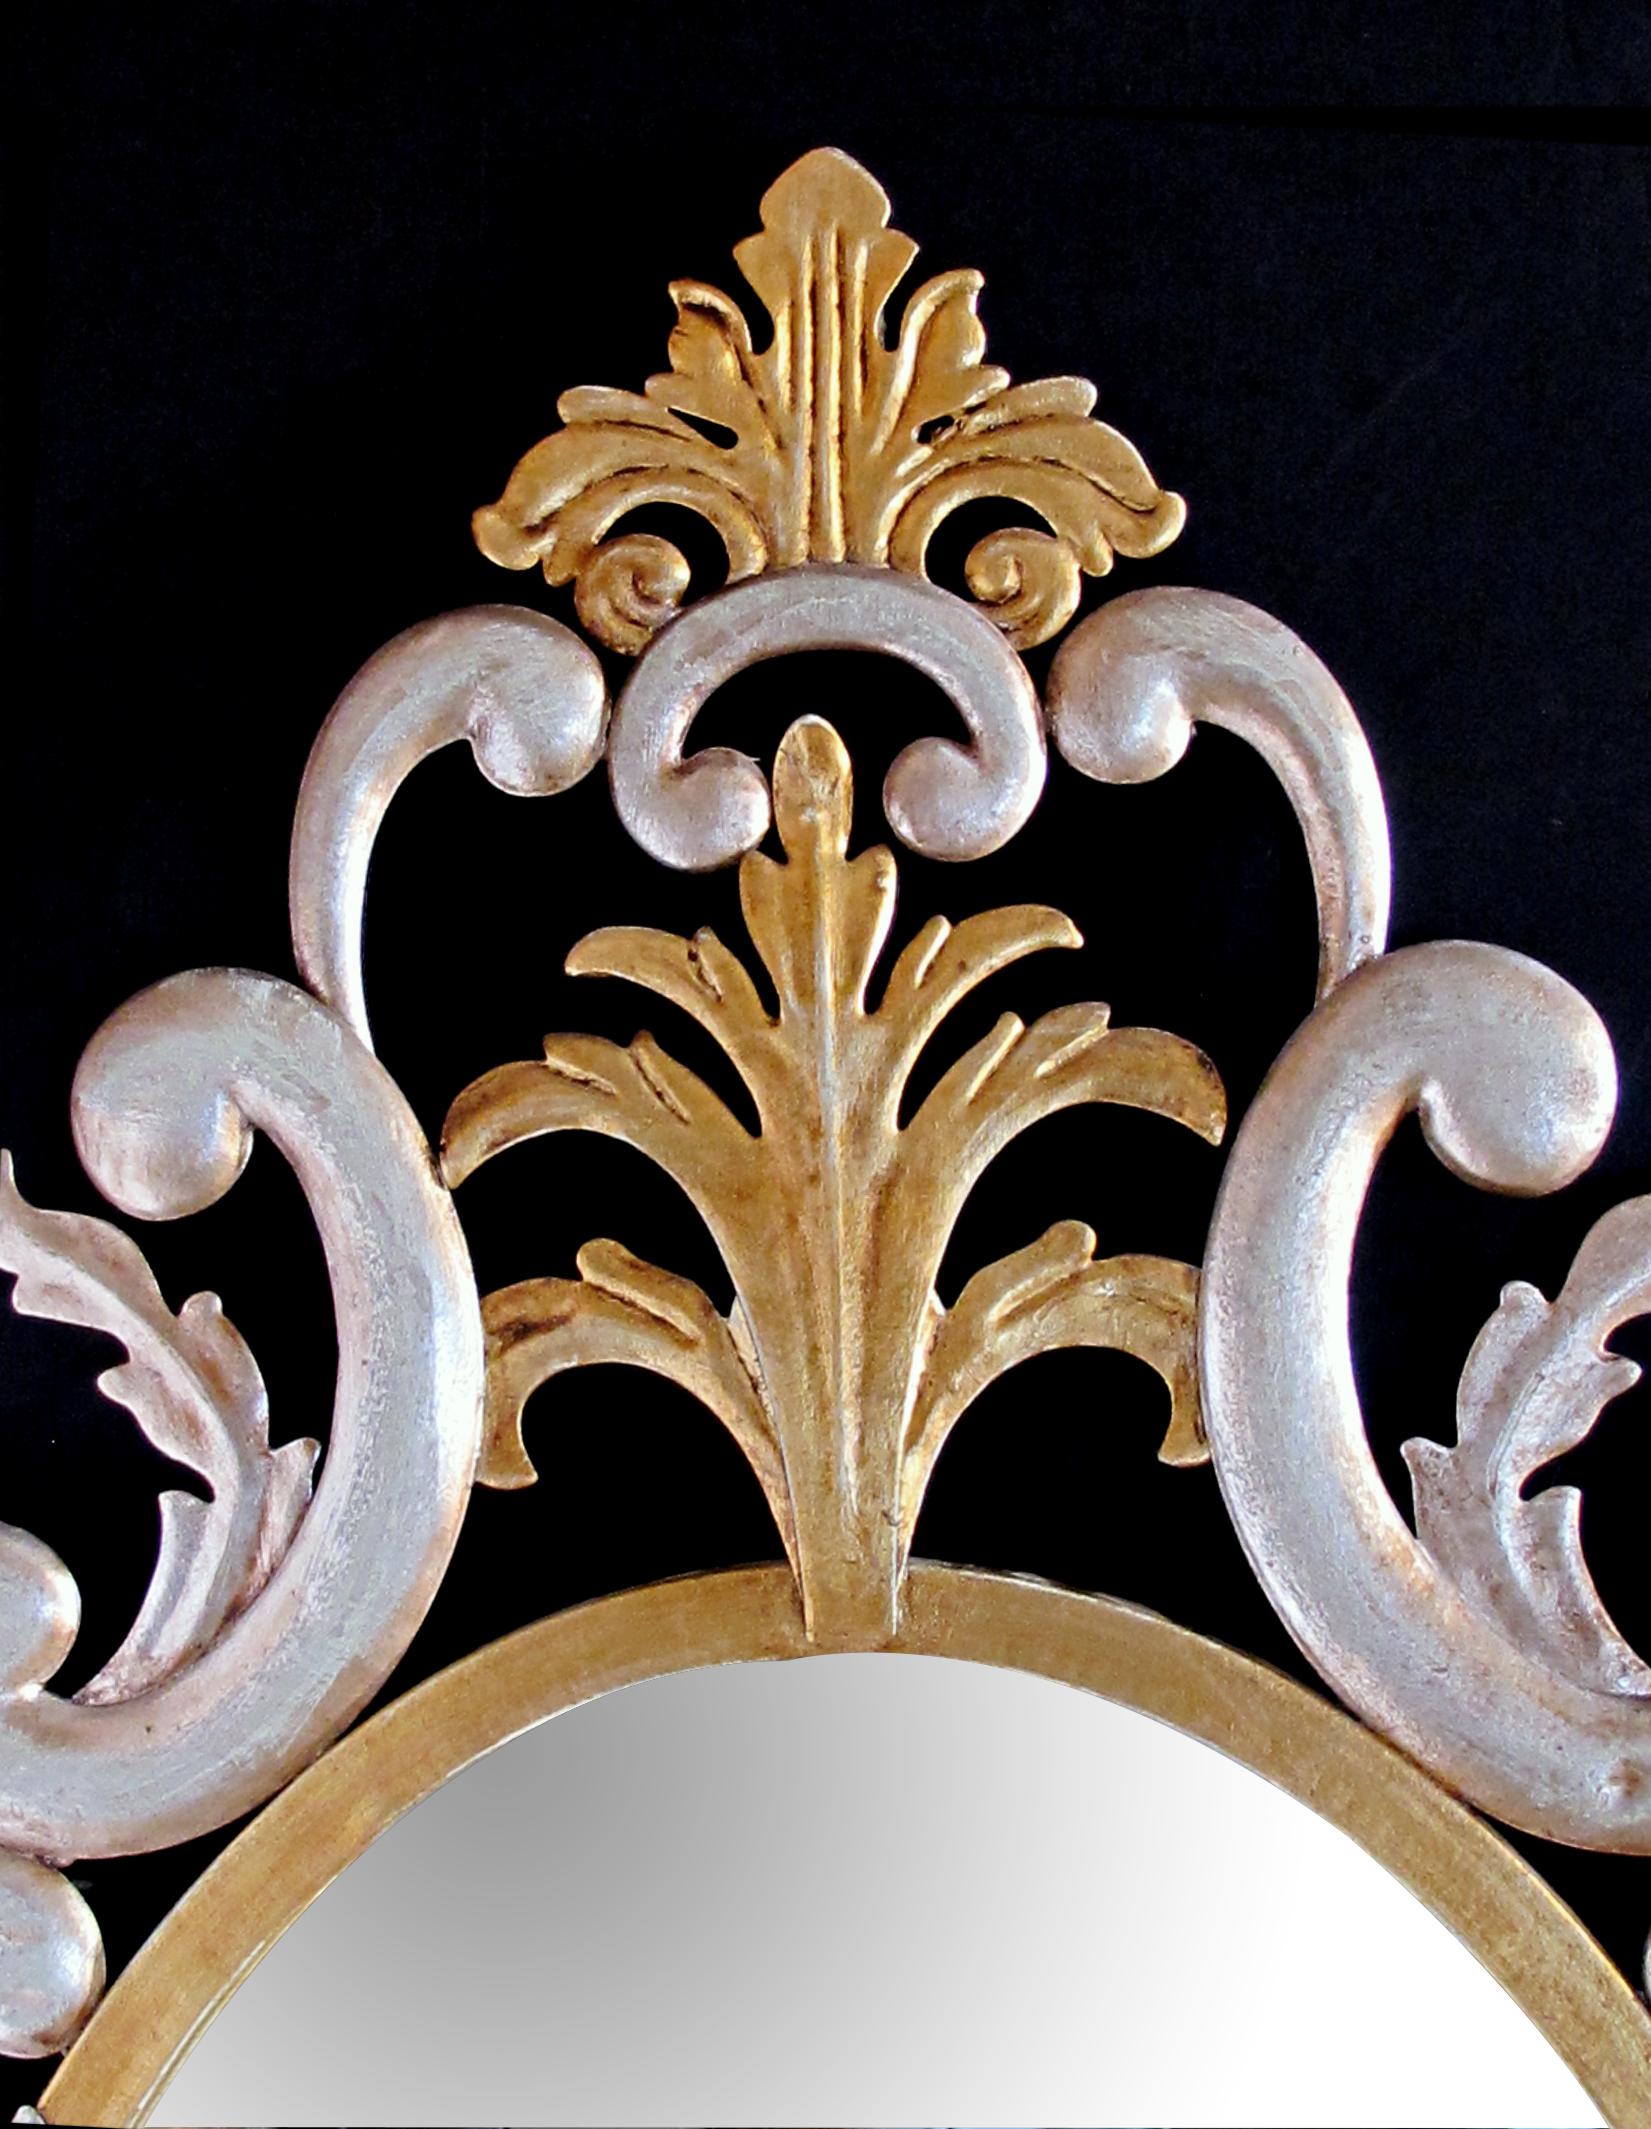 Un miroir de style renaissance rococo avec une touche de modernité, la plaque ovale dans un cadre en métal doré composé de volutes en C et de rinceaux feuillus.